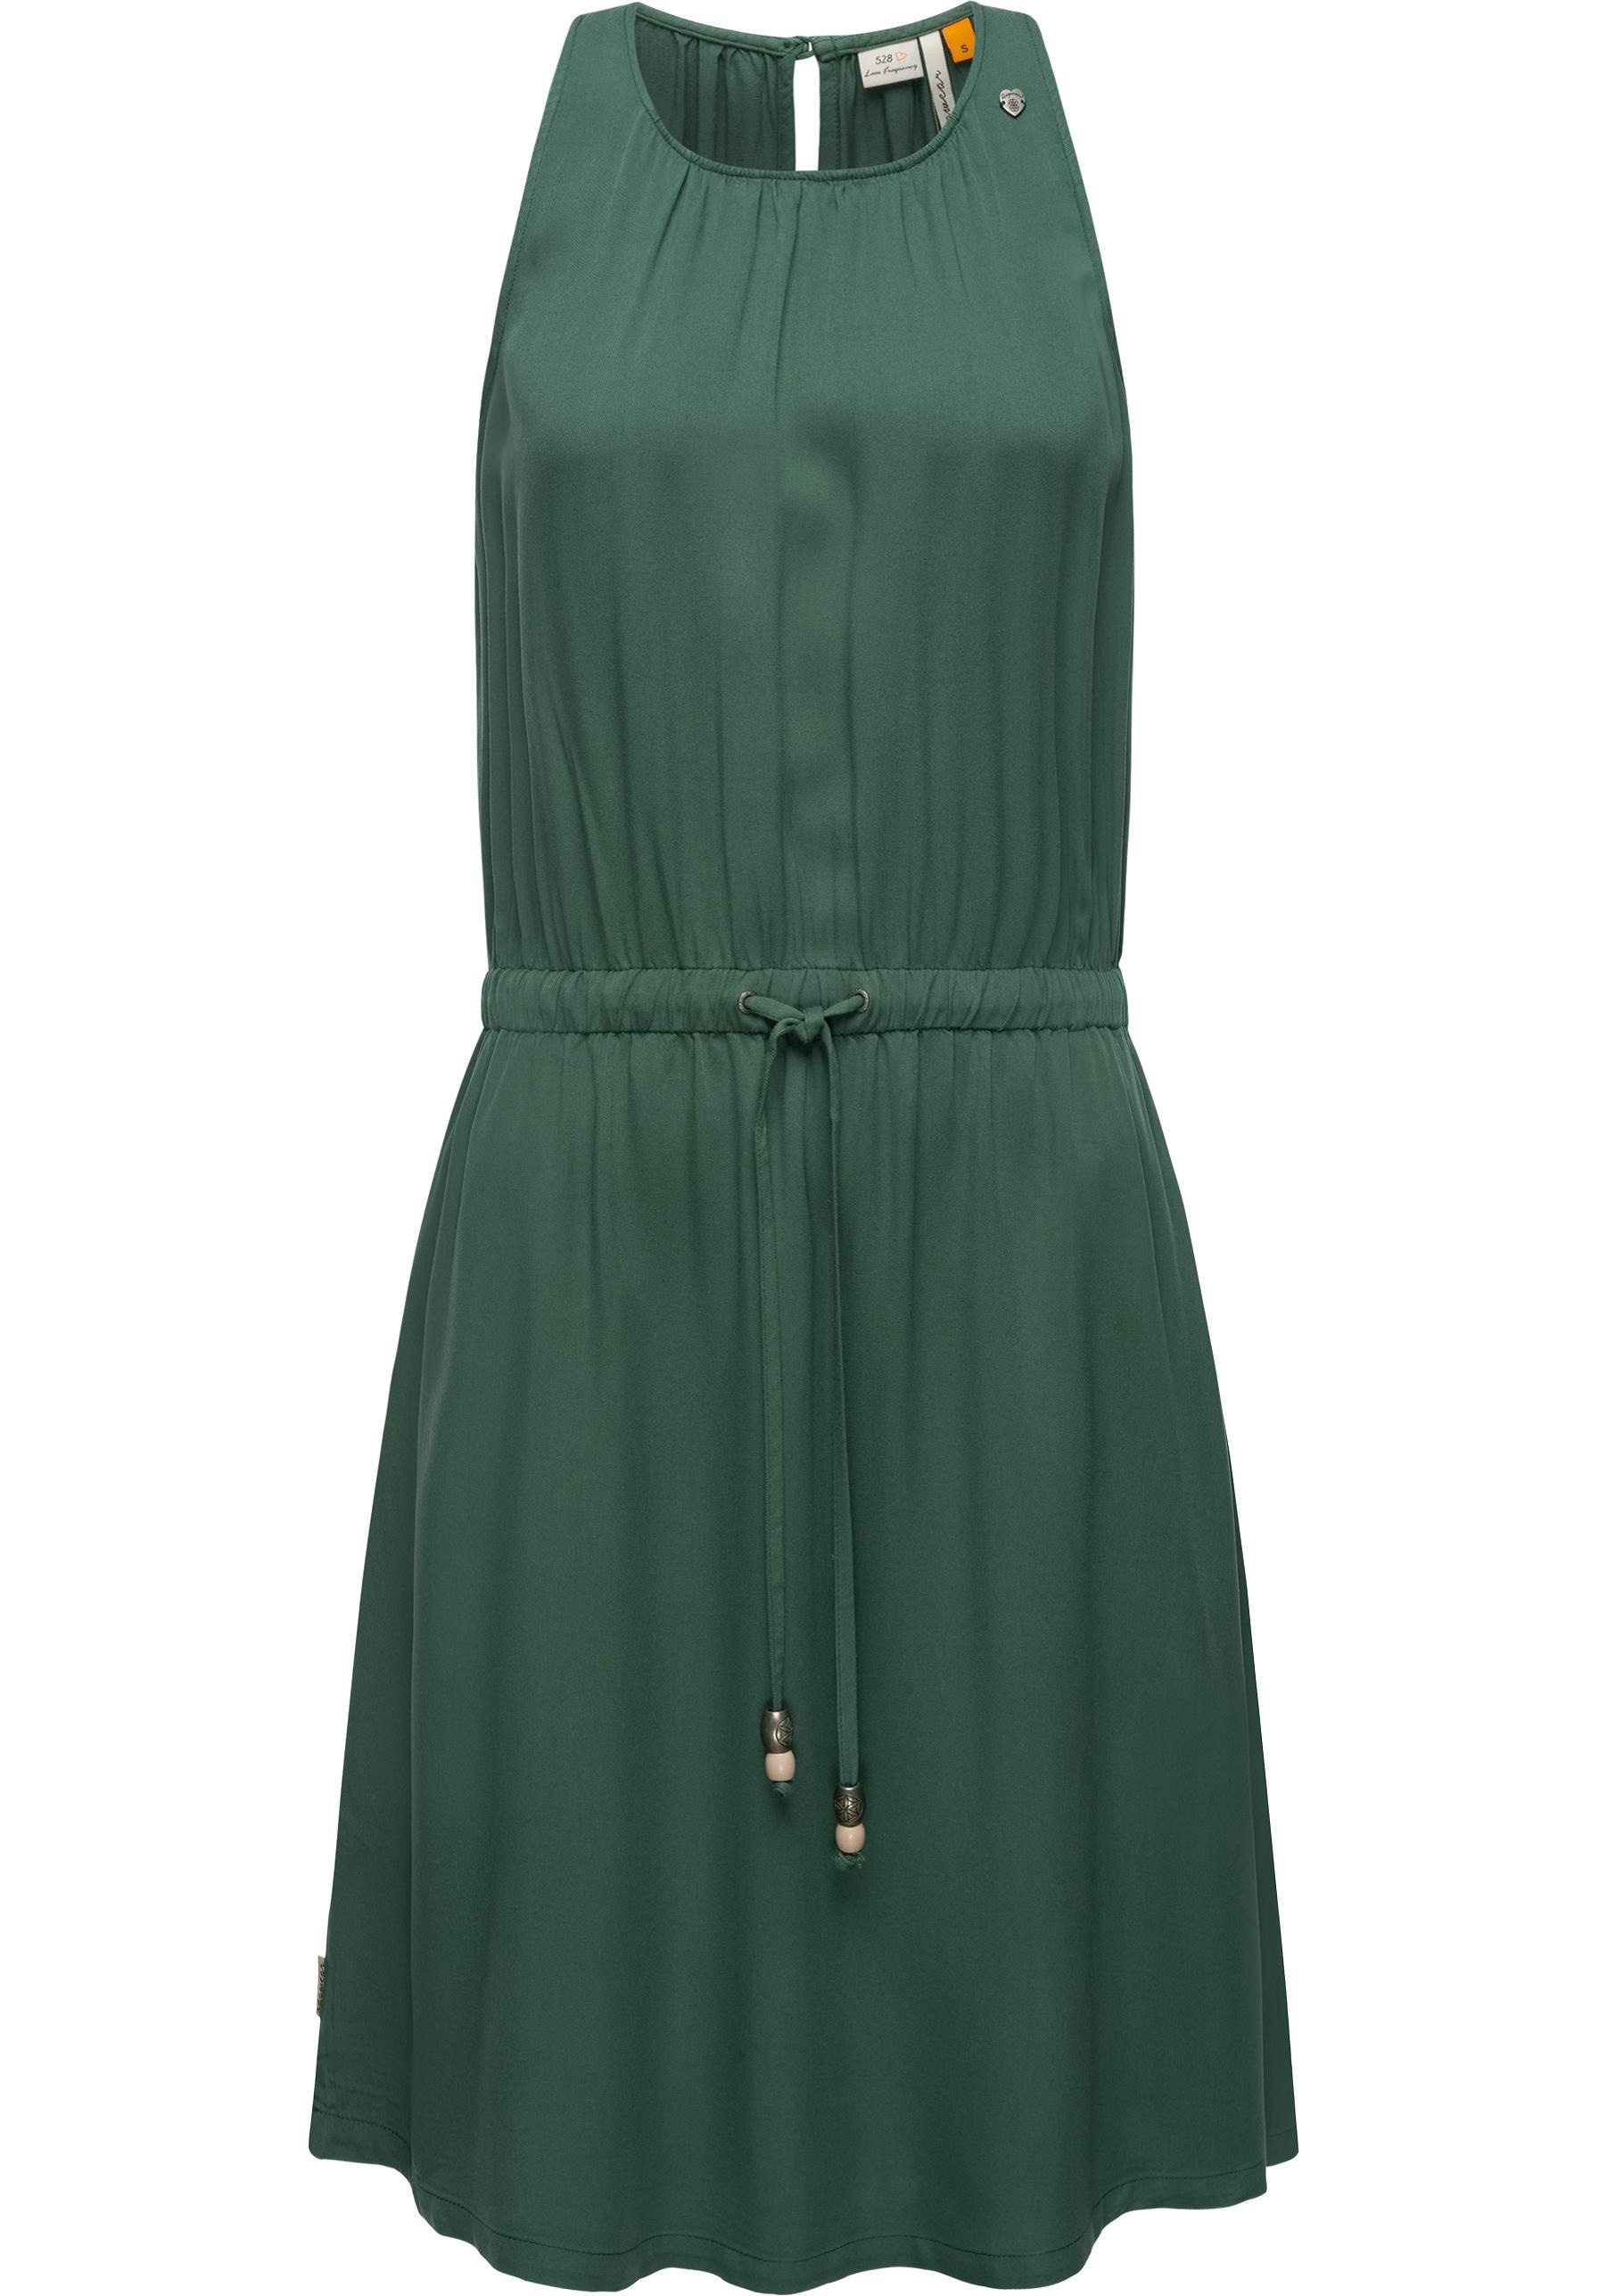 Ragwear Blusenkleid »Sanai«, stylisches Sommerkleid mit verspielten Details